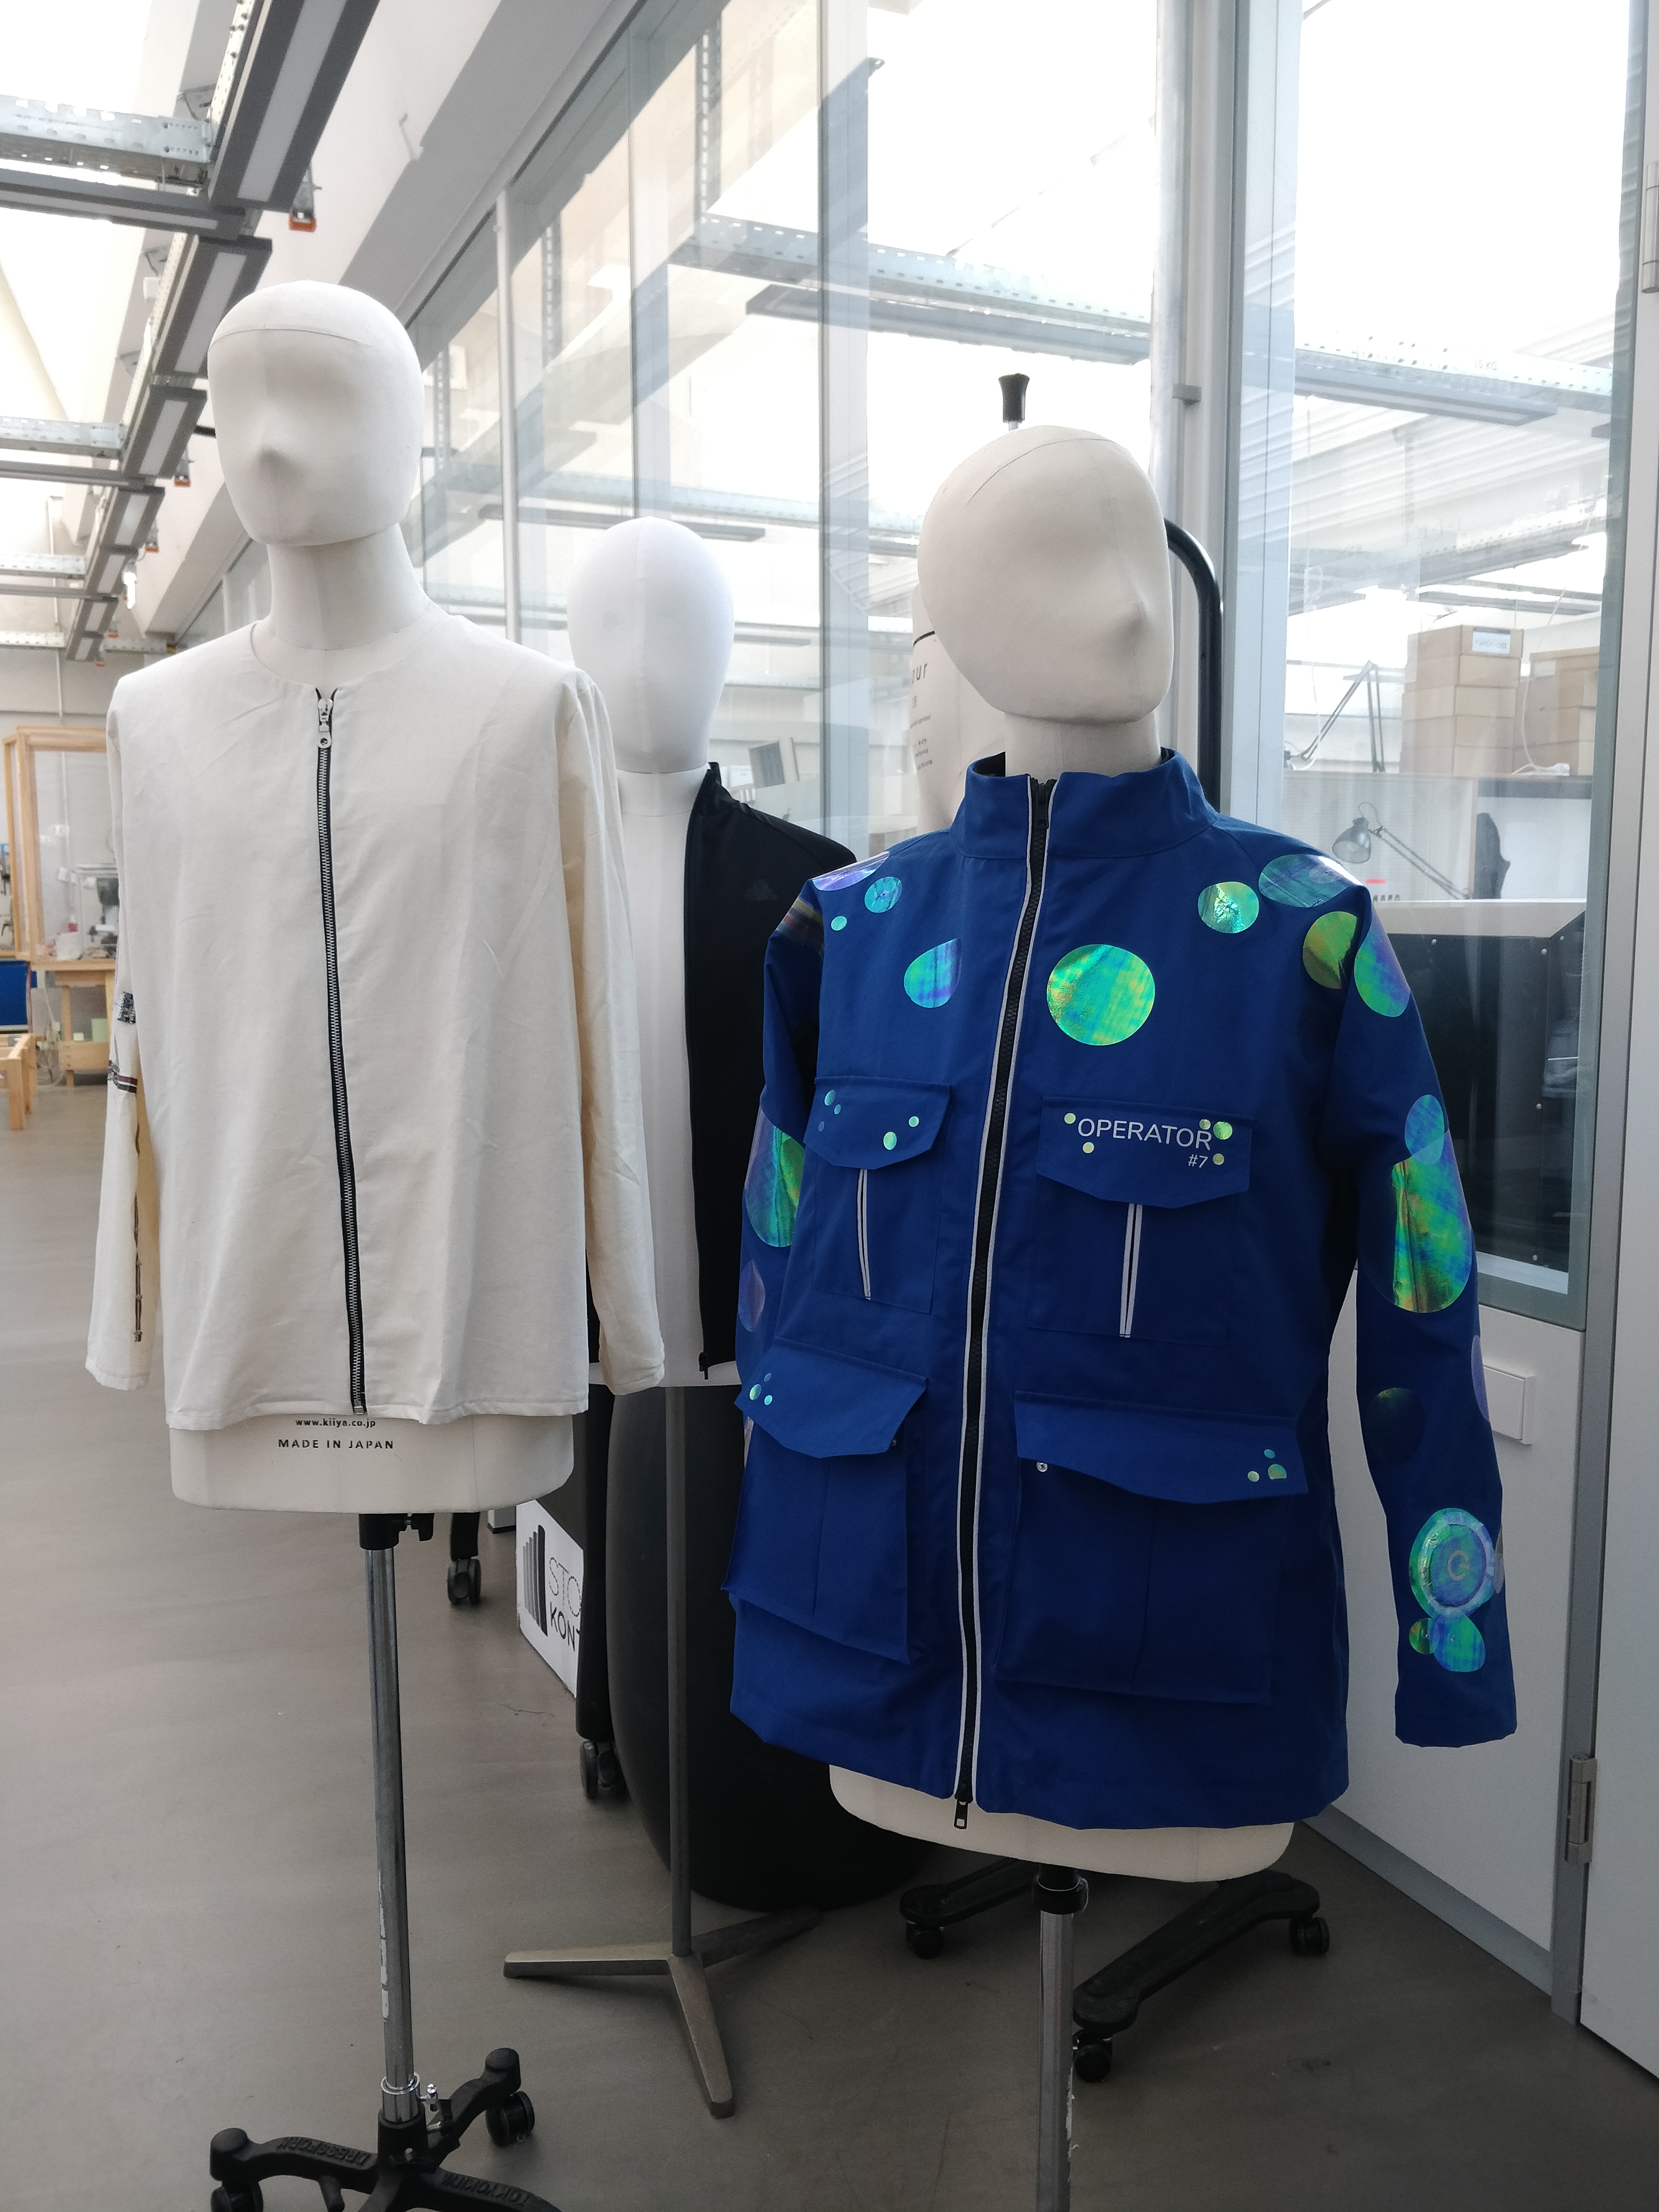 Das Bild zeigt zwei Schneiderpuppen, die Prototypen von Jacken tragen. Die linke Figur trägt eine weißte Jacken, während die rechte Figur eine blaue Jacke trägt. Die blaue Jacke ist ausgestattet mit Sensoren und reflektierenden Patches. 